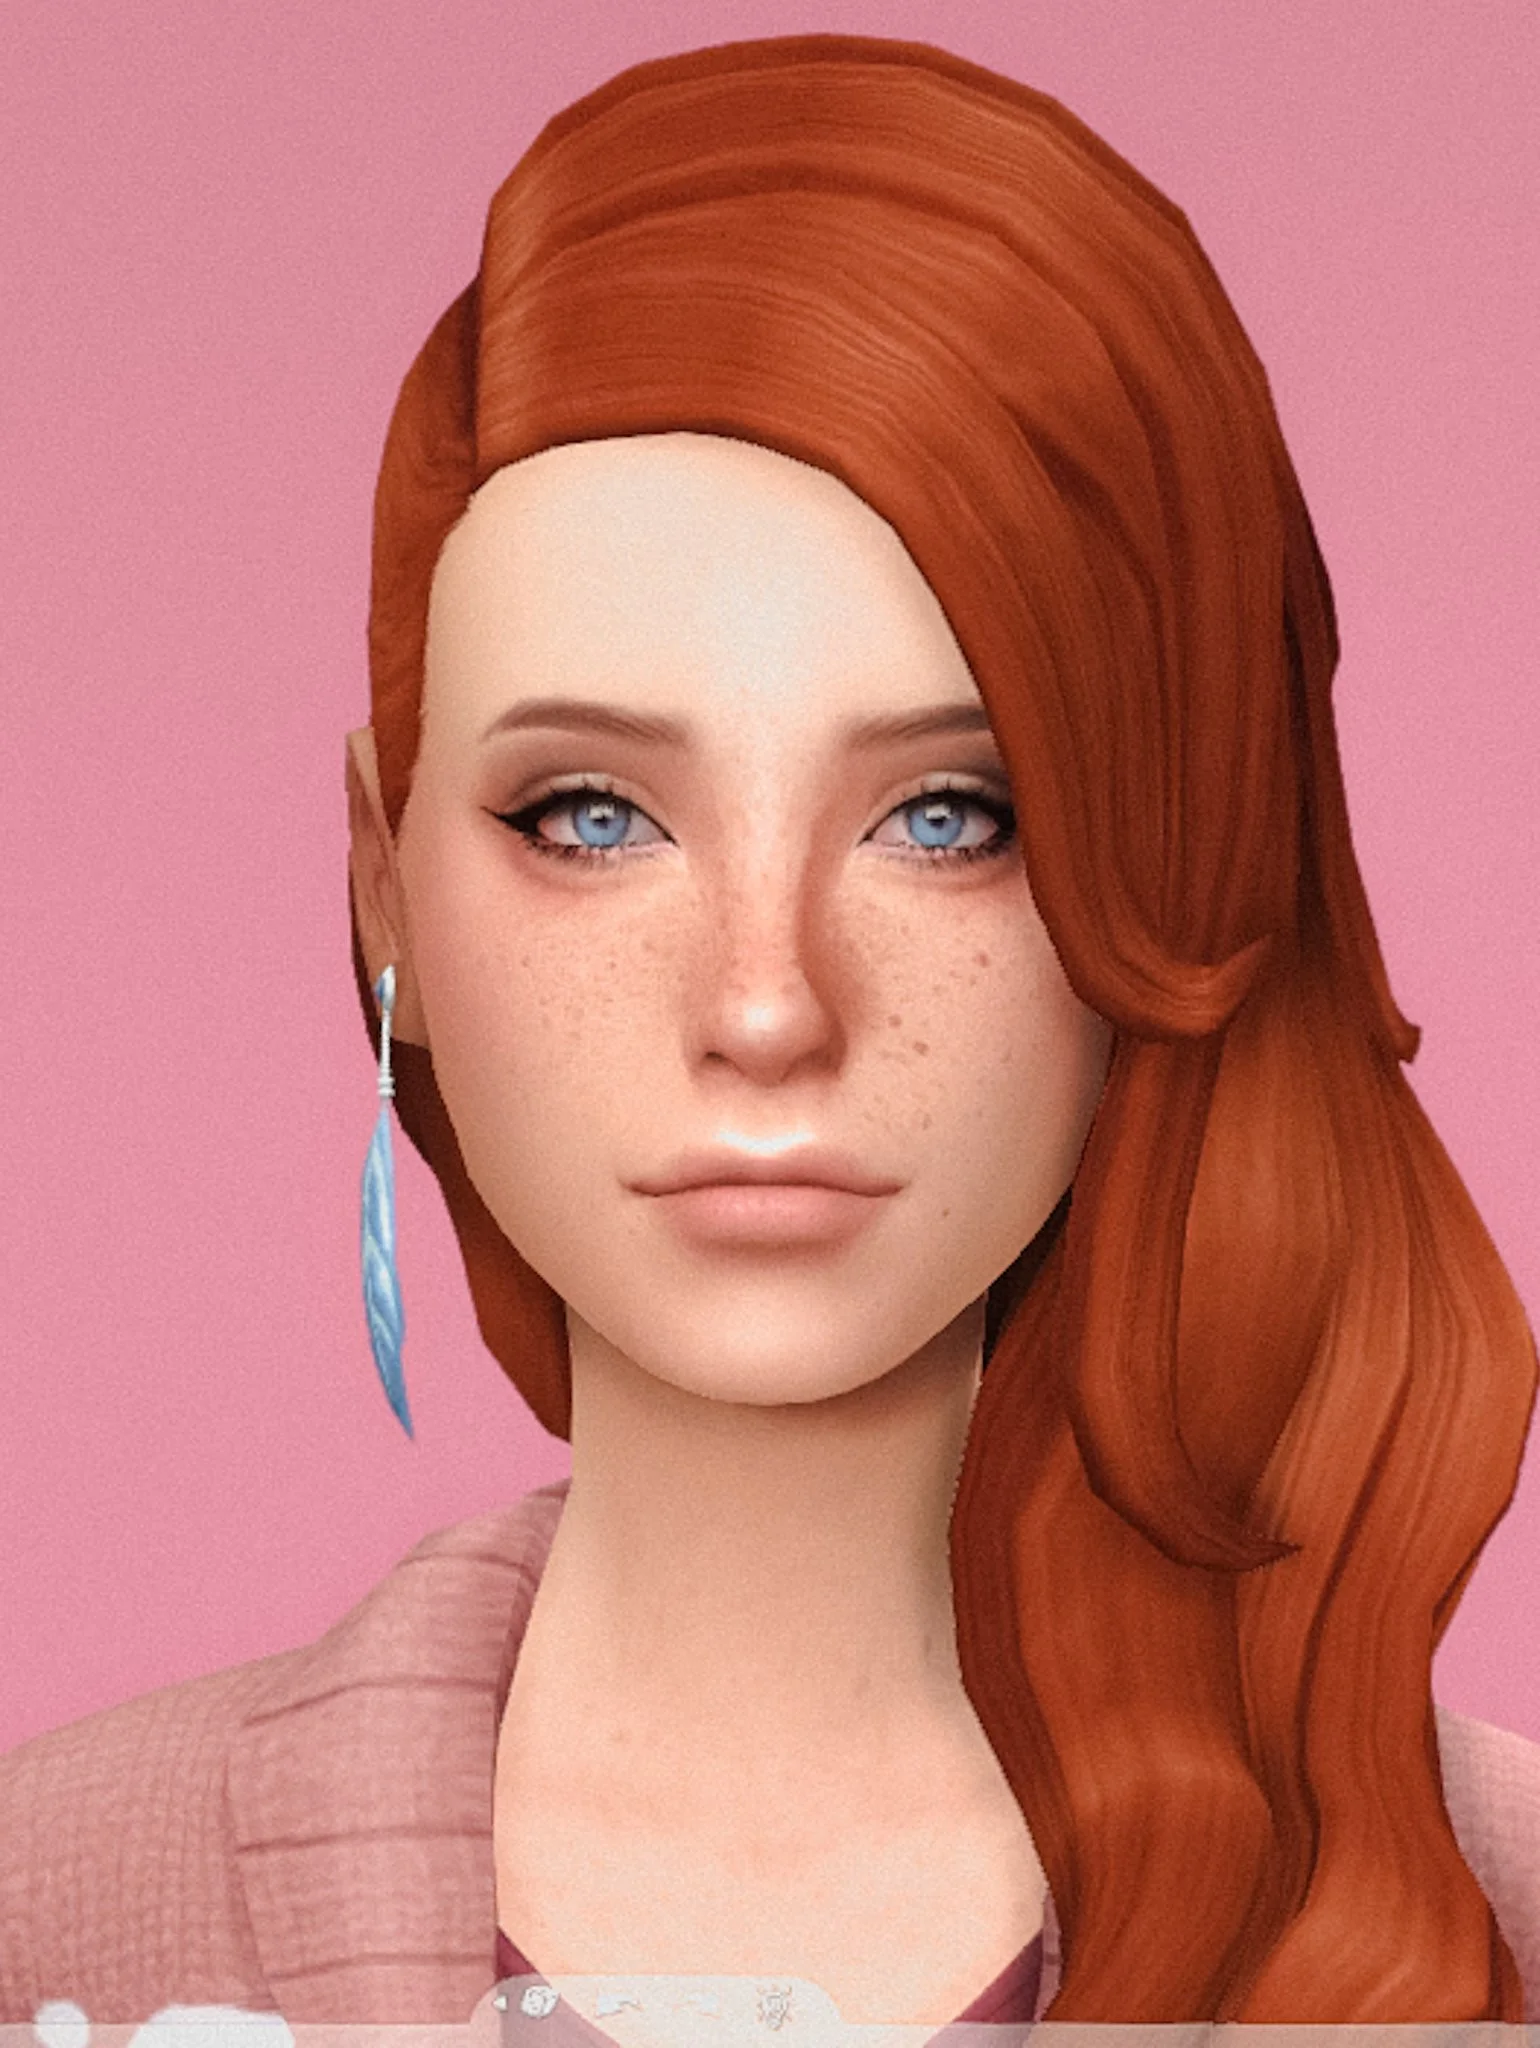 Авторы The Sims 4 дразнят игроков девушкой из мема - фото 9